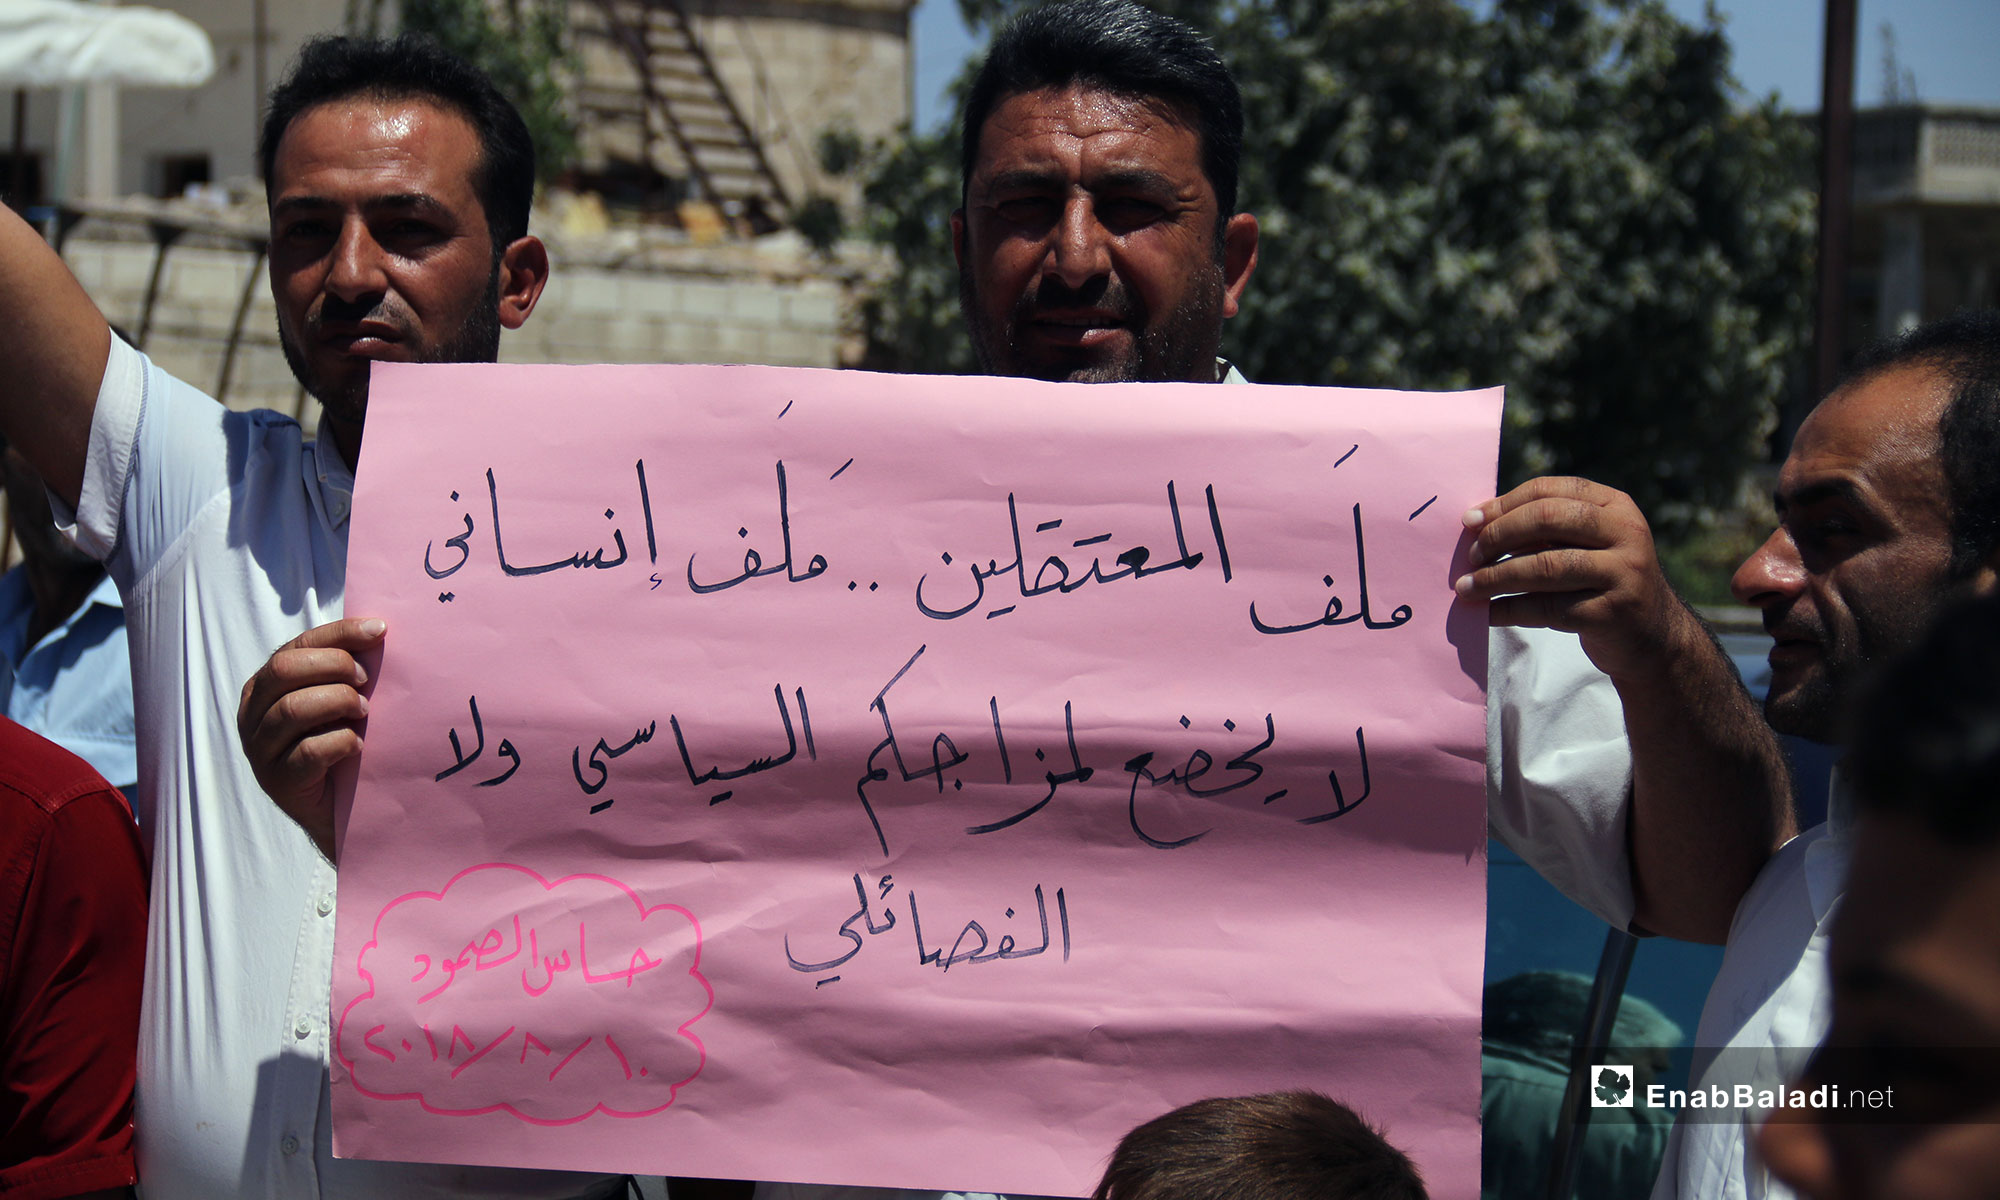 وقفة تضامنية لأجل المعتقلين السوريين في بلدة حاس بريف إدلب - 10 من آب 2018 (عنب بلدي)